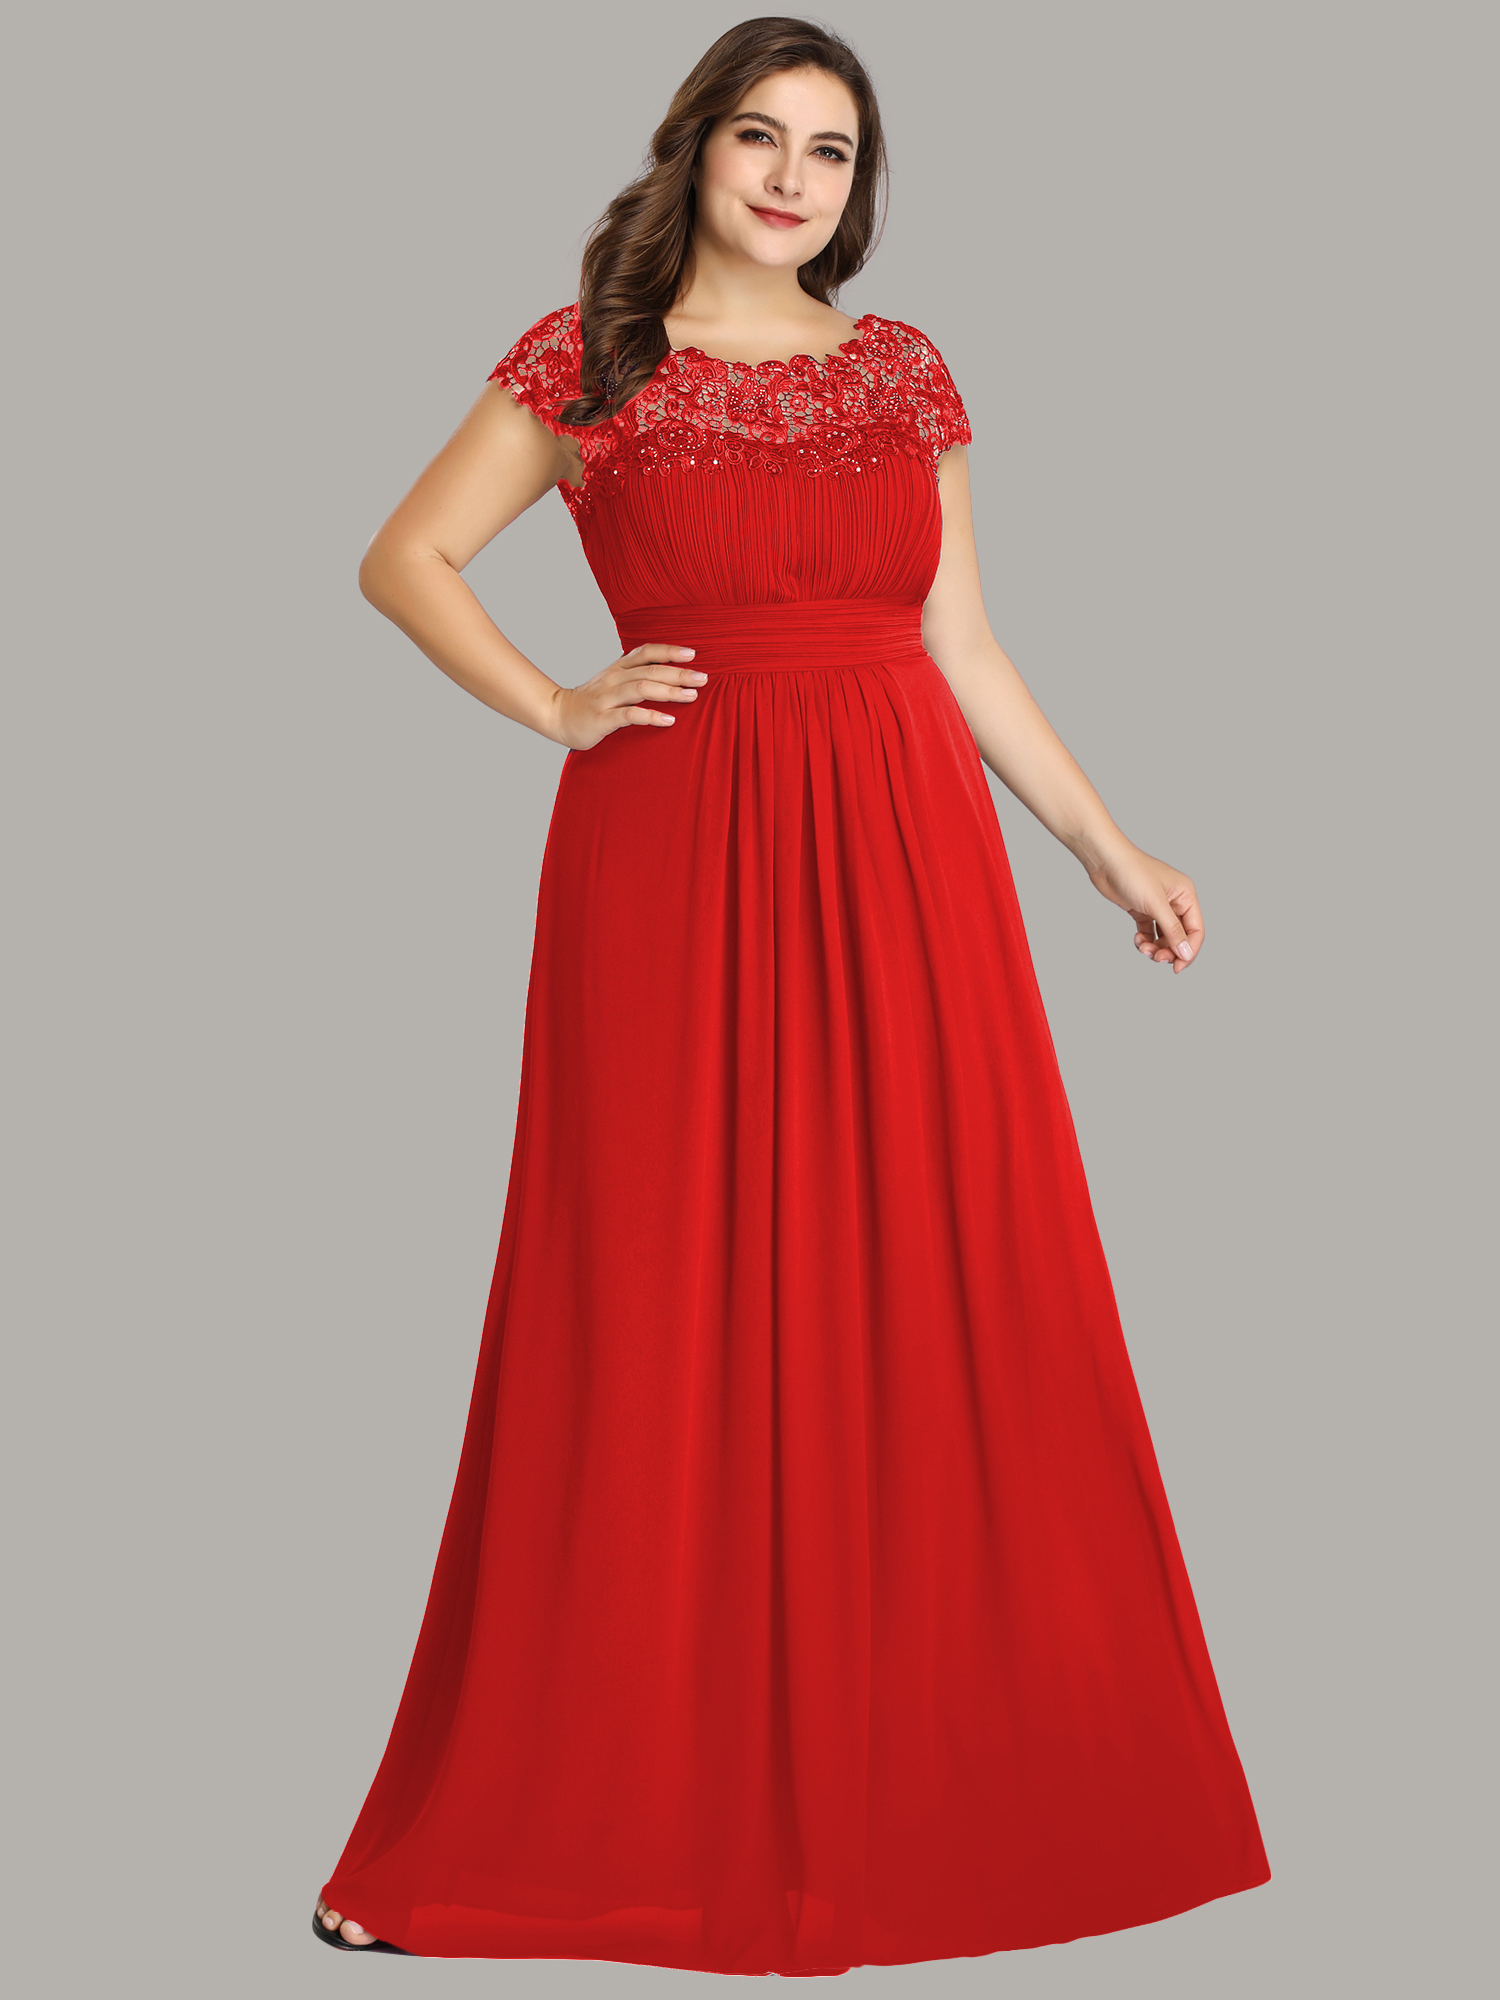 Plesové a společenské šaty červená 59EVe (Dámské šaty)